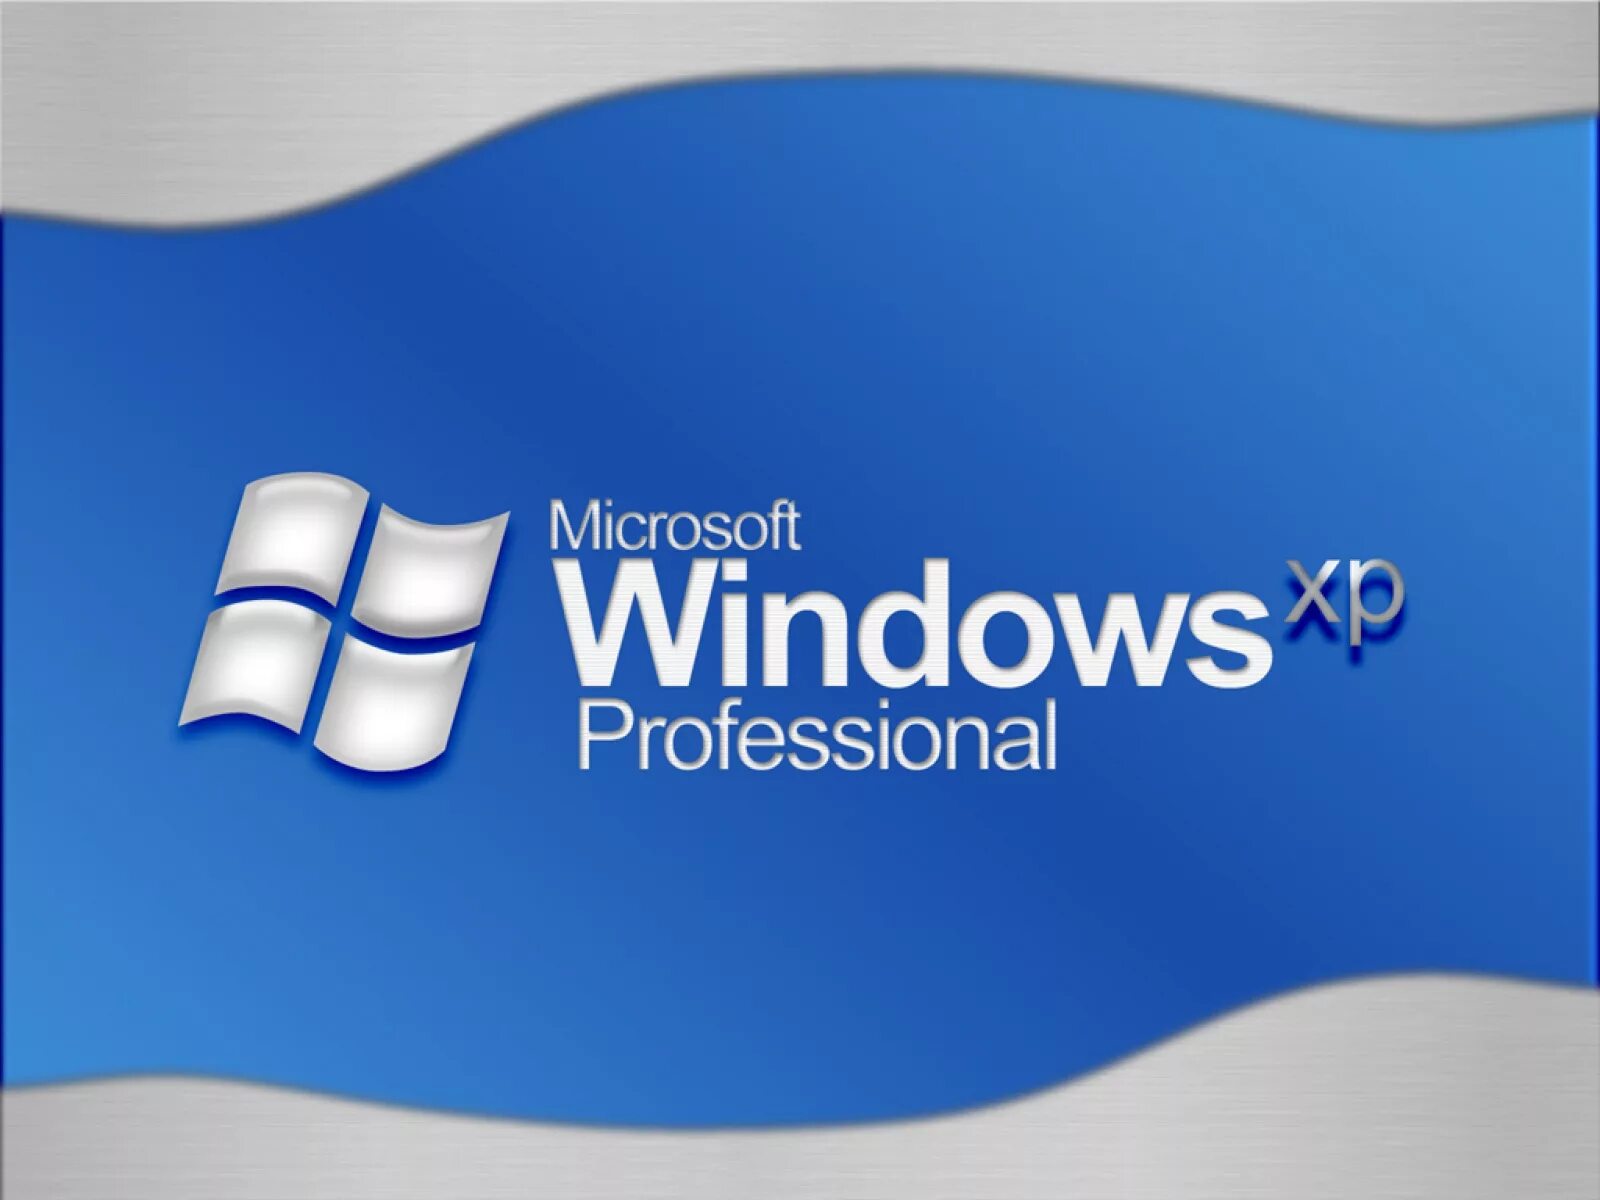 Winxp. Виндовс XP. Виндовс профессионал. Виндовс хр professional. Виндовс XP профессионал.